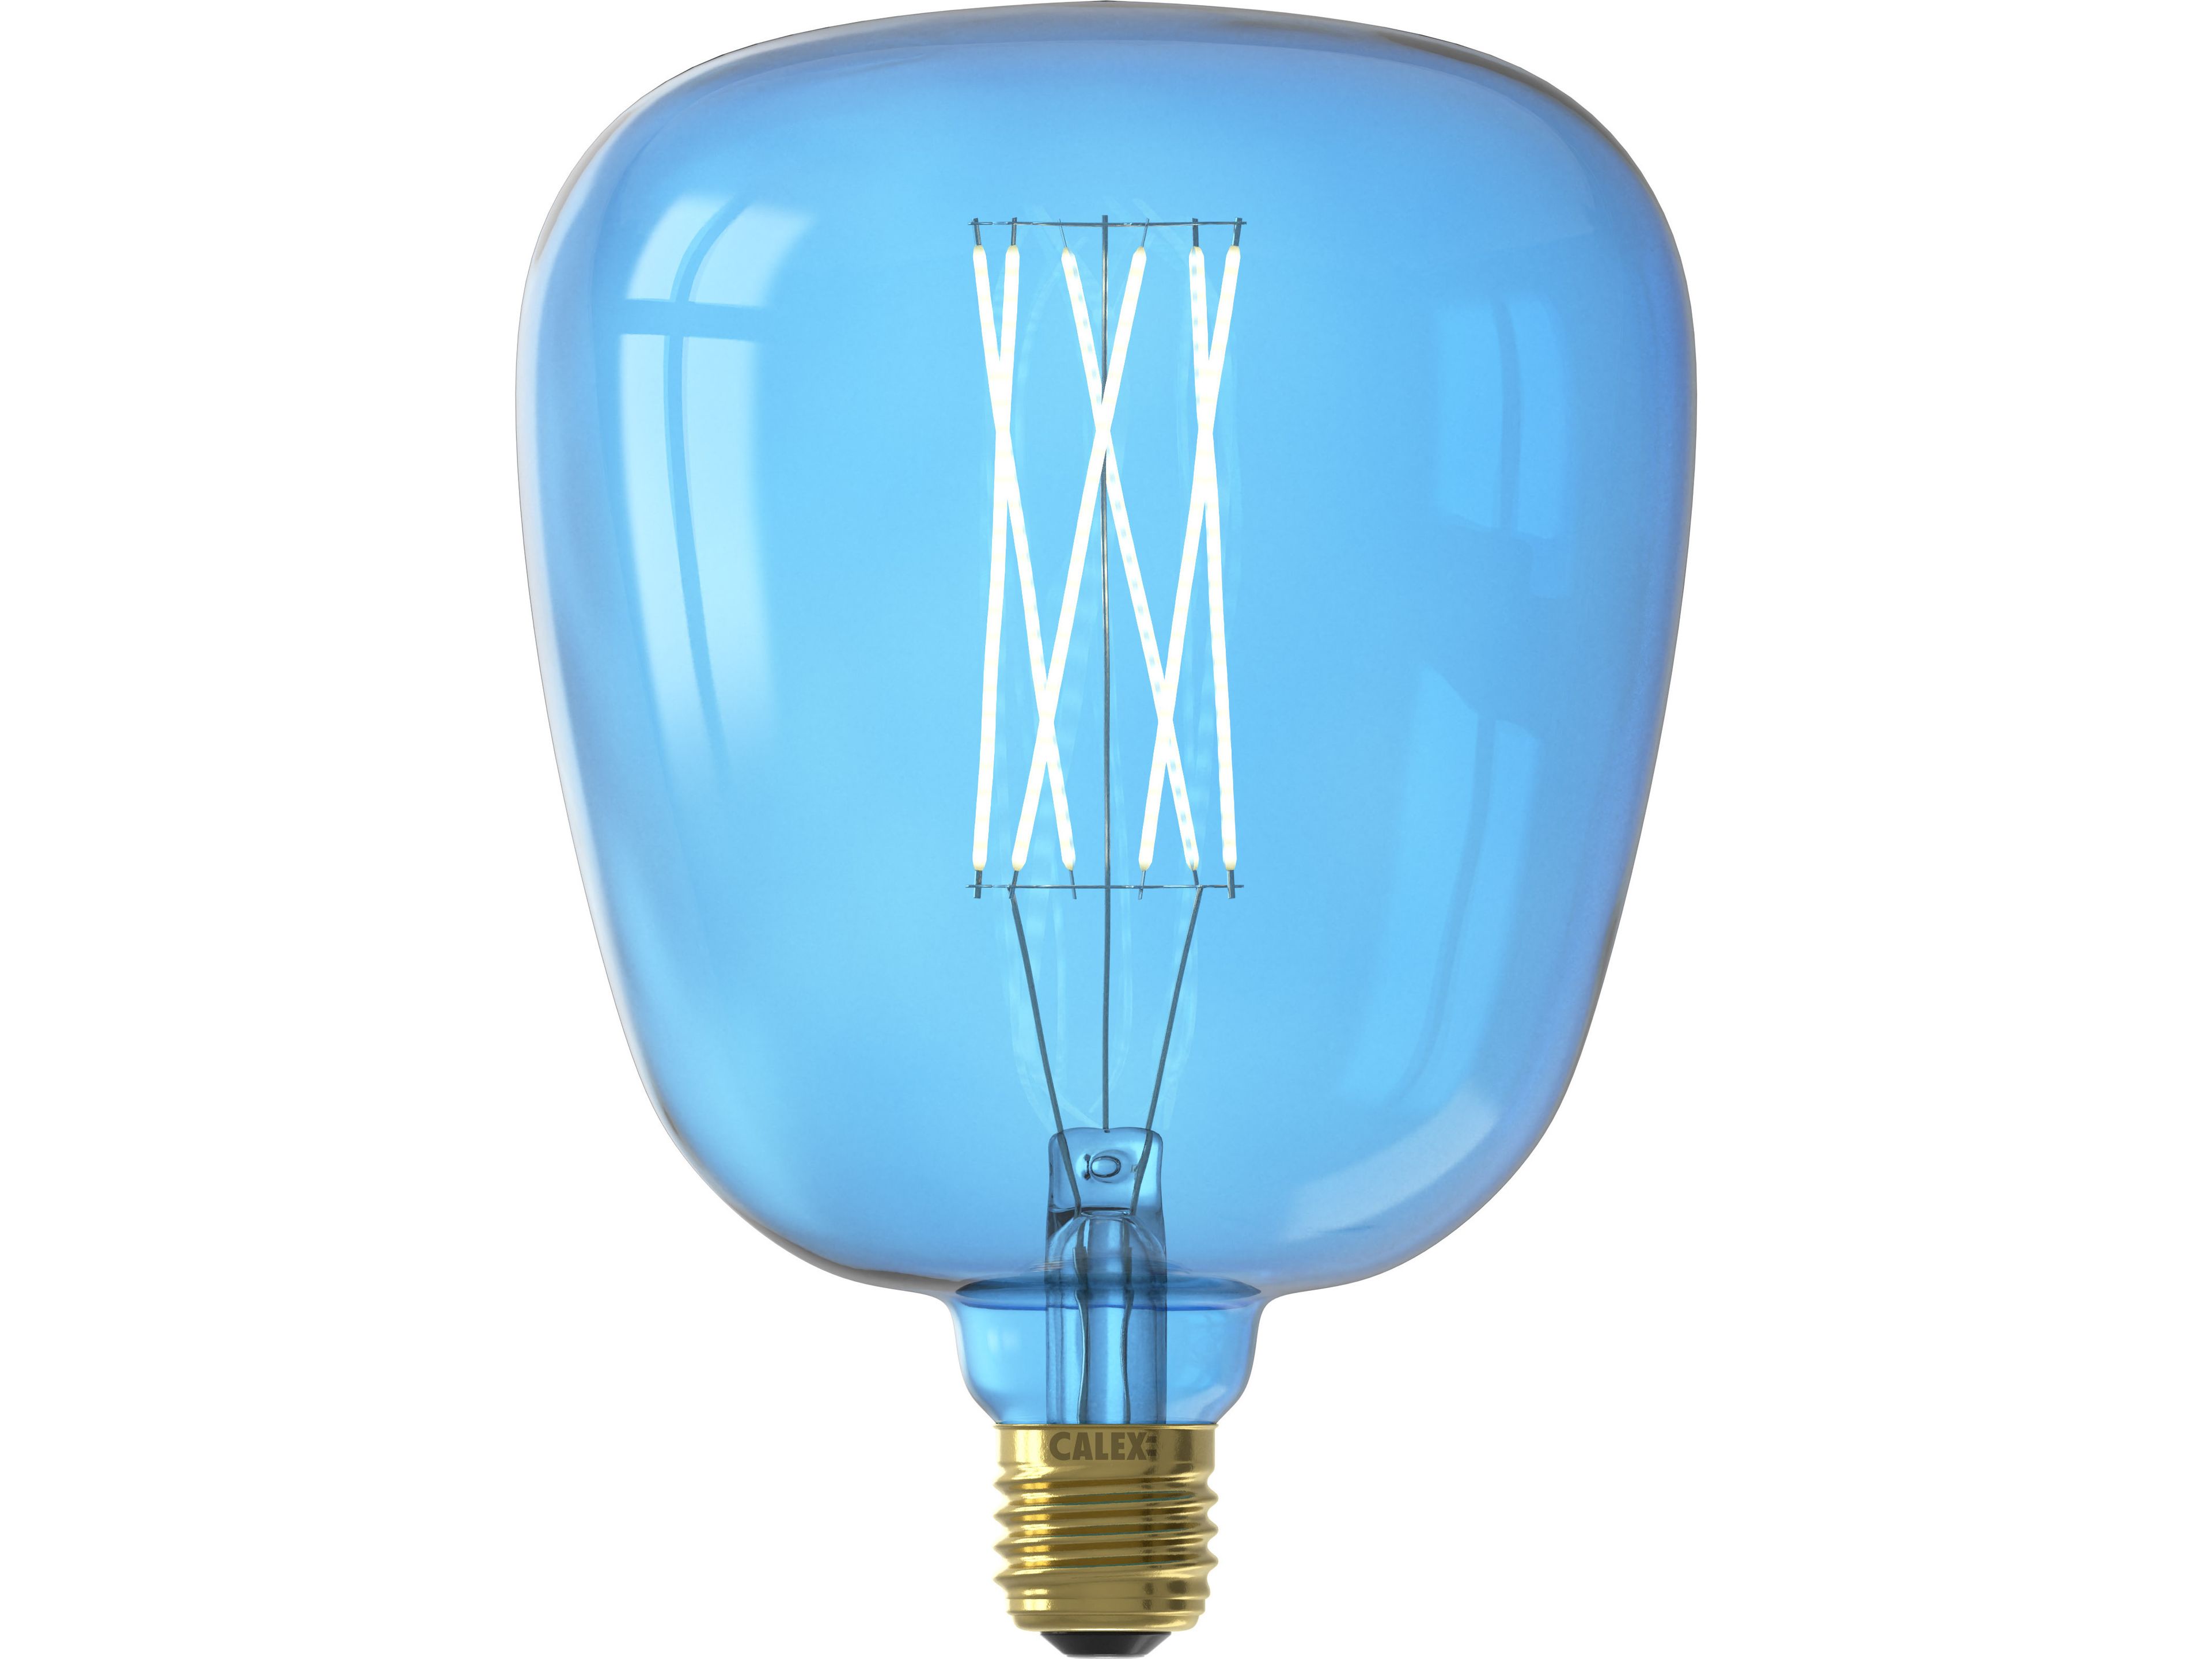 calex-kiruna-sapphire-blue-led-lampe